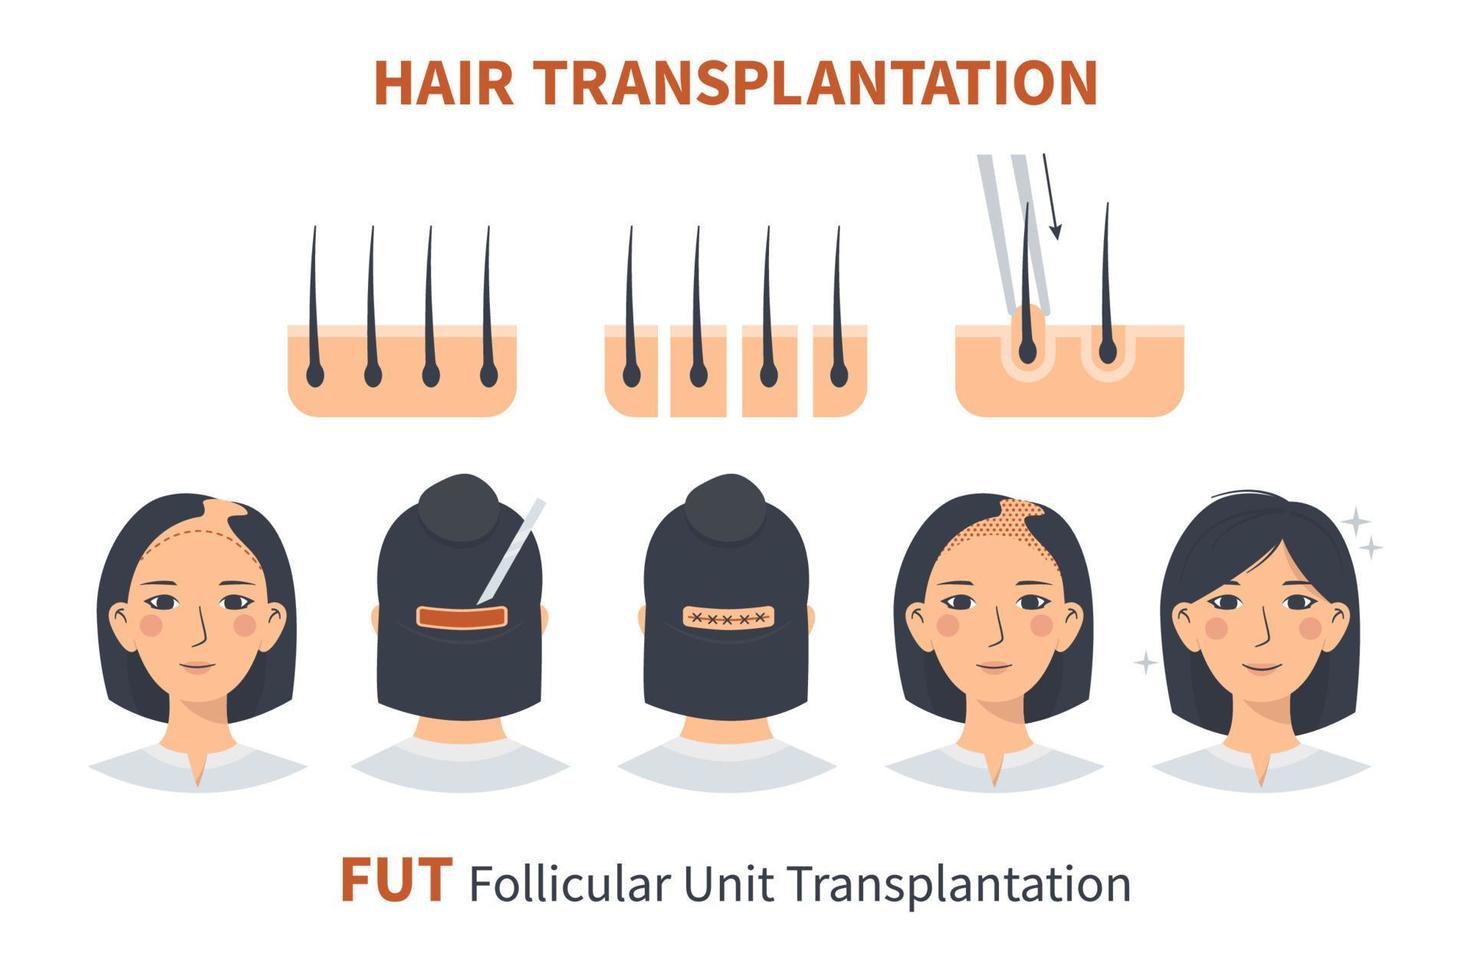 estágios do transplante de cabelo feminino fut unidade folicular. tratamento cirúrgico da calvície, alopecia, queda de cabelo. vetor infográficos médicos, um couro cabeludo feminino. tira, máquina de enxerto.